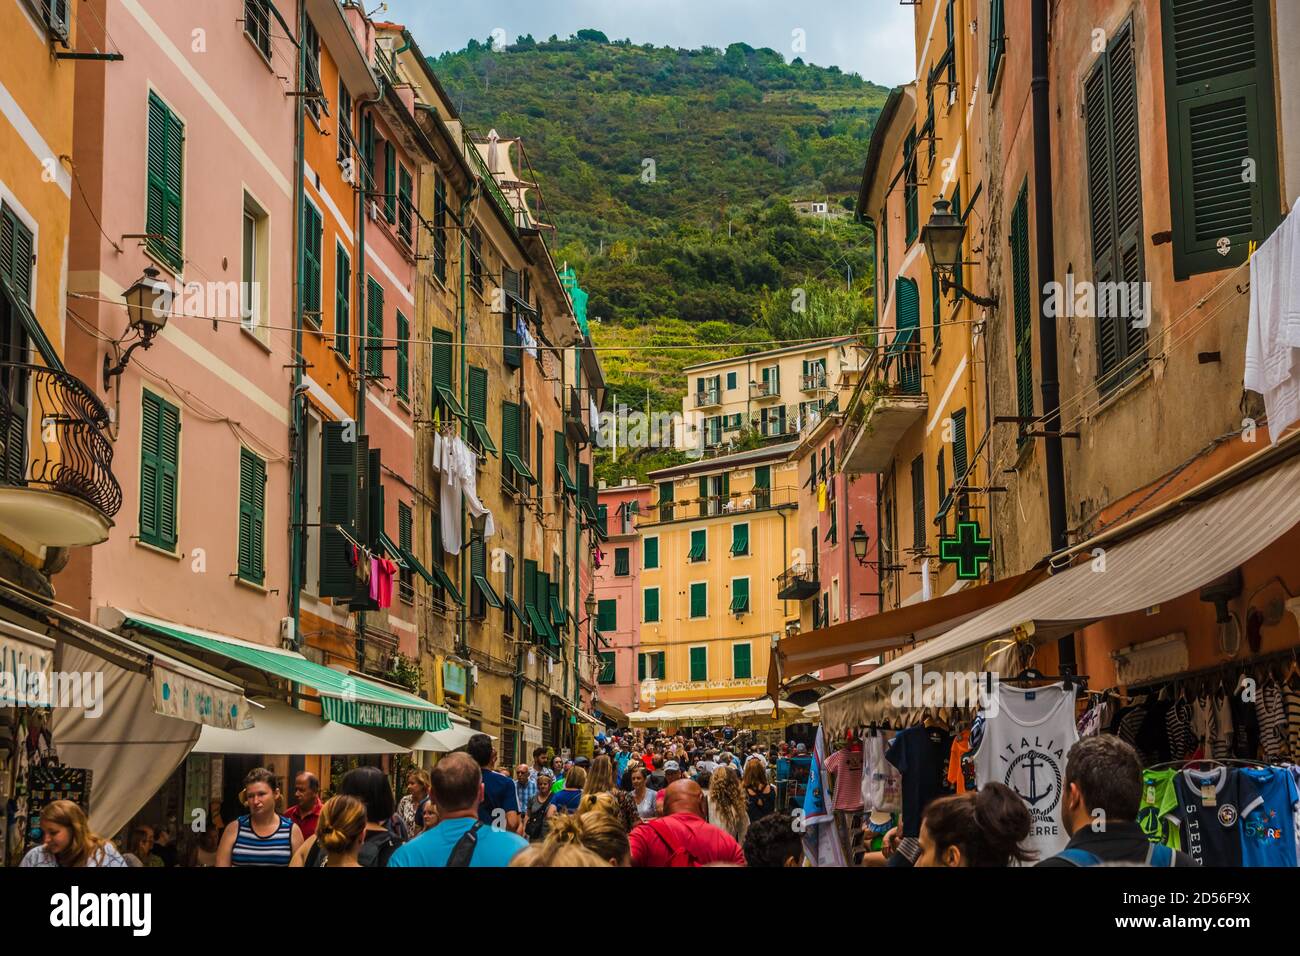 Schöne Aussicht auf die Hauptstraße von Vernazza, Via Roma in der Küstenregion Cinque Terre. Die belebte Straße mit bunten Häusern, Geschäften und Restaurants... Stockfoto